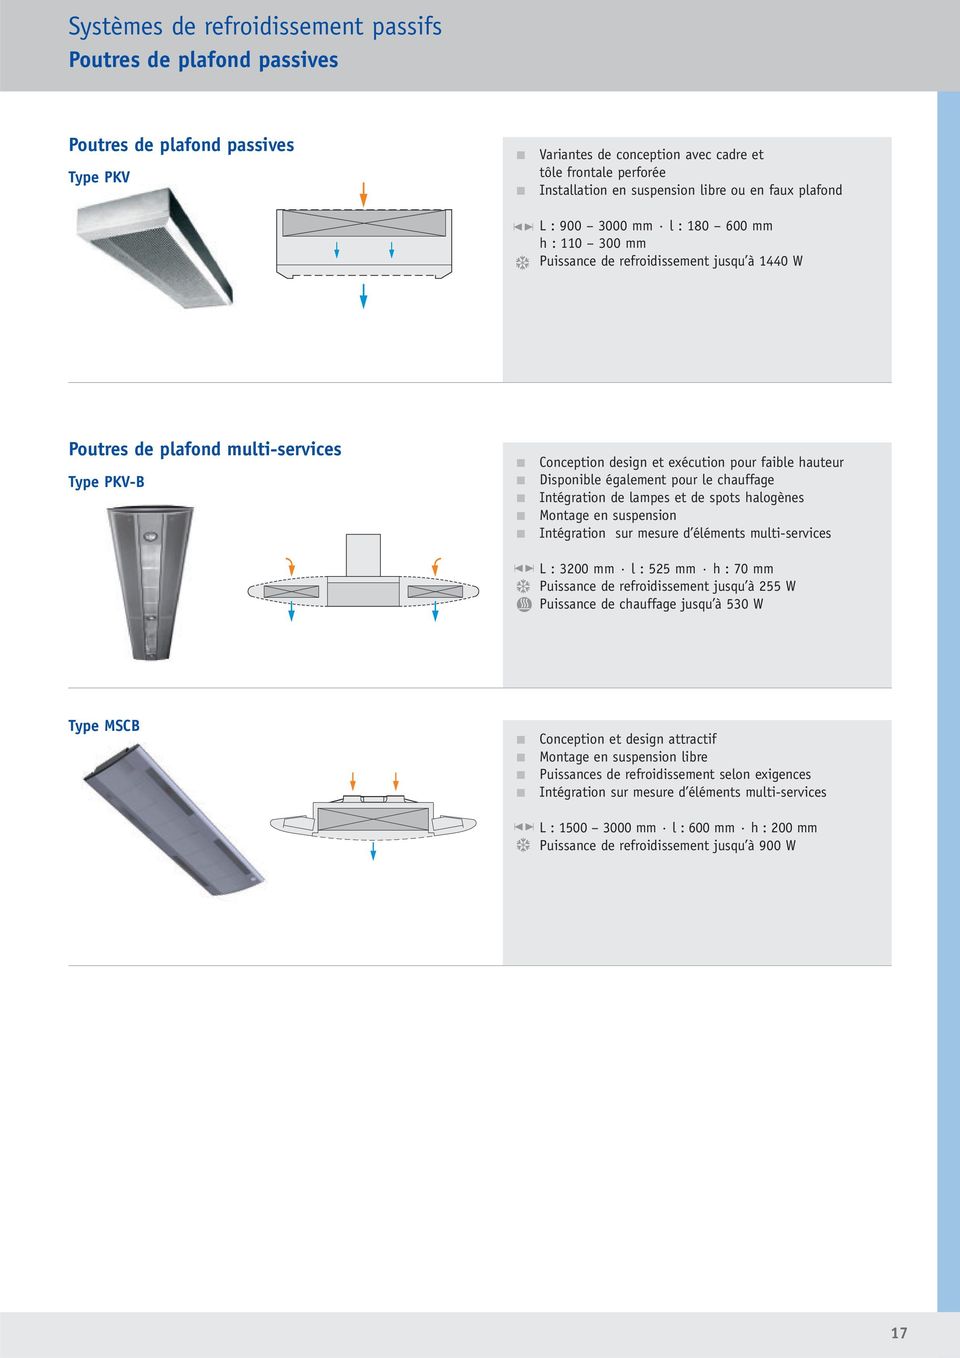 hauteur Disponible également pour le chauffage Intégration de lampes et de spots halogènes Montage en suspension Intégration sur mesure d éléments multi-services L : 3200 mm l : 525 mm h : 70 mm